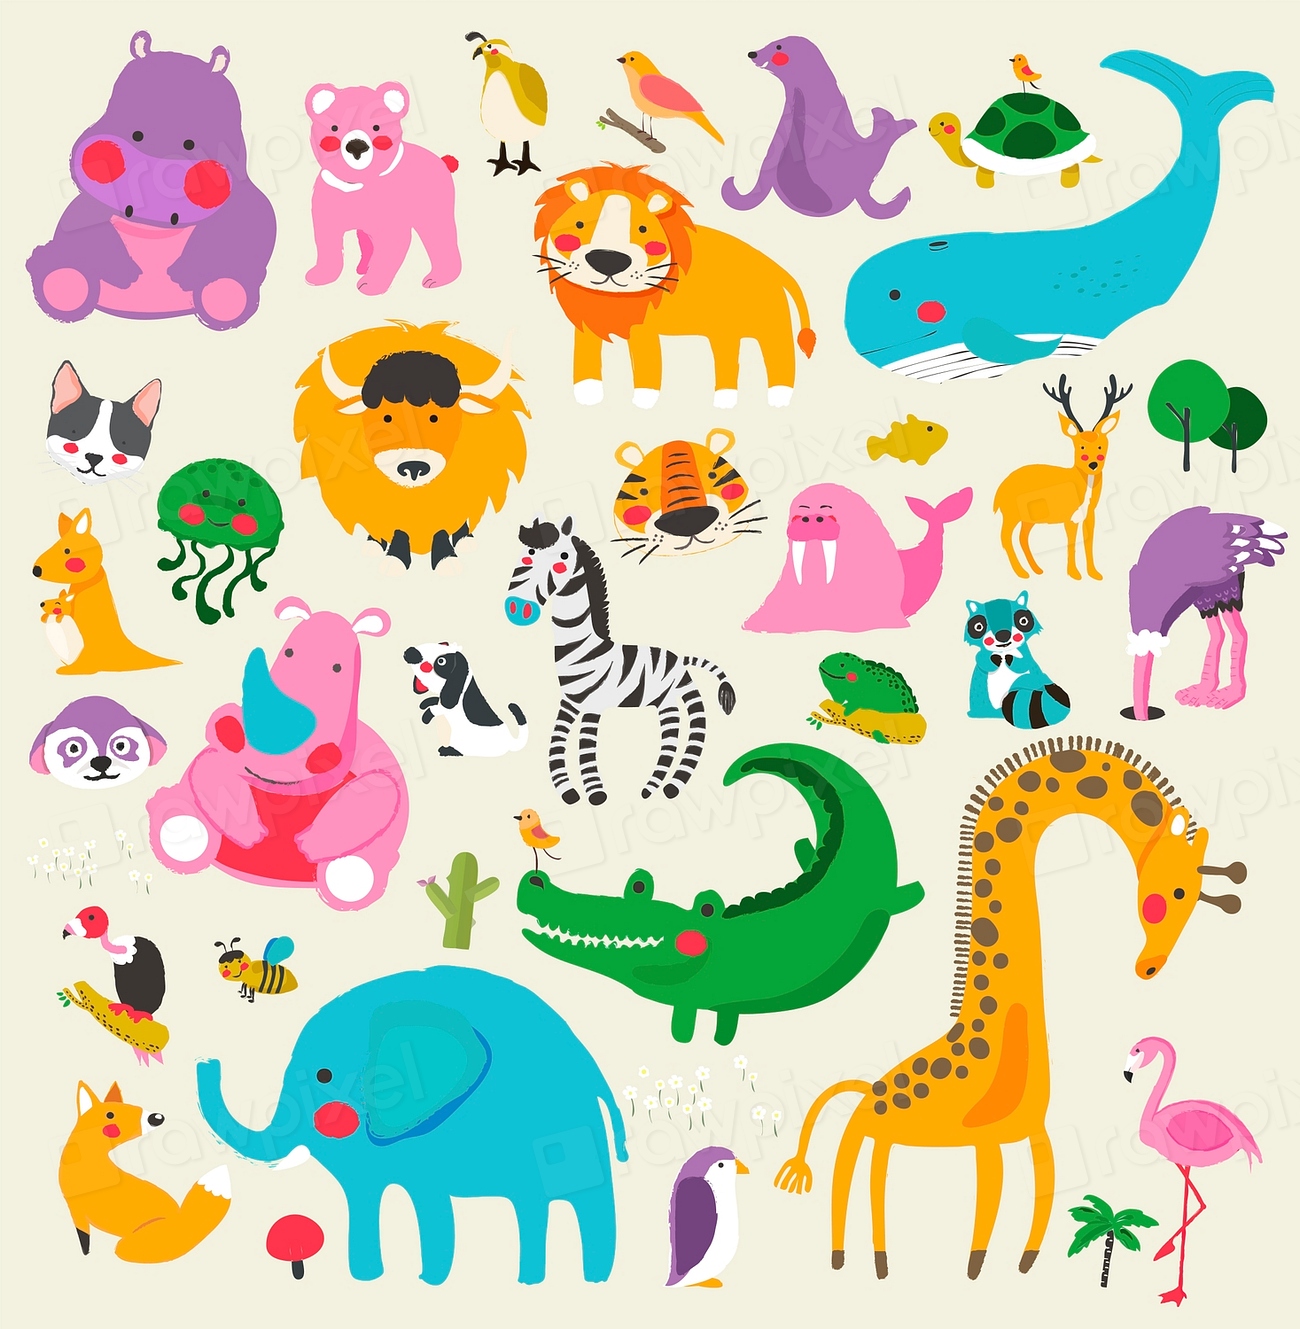 Cute illustration of wildlife animals | Premium Vector Illustration ...